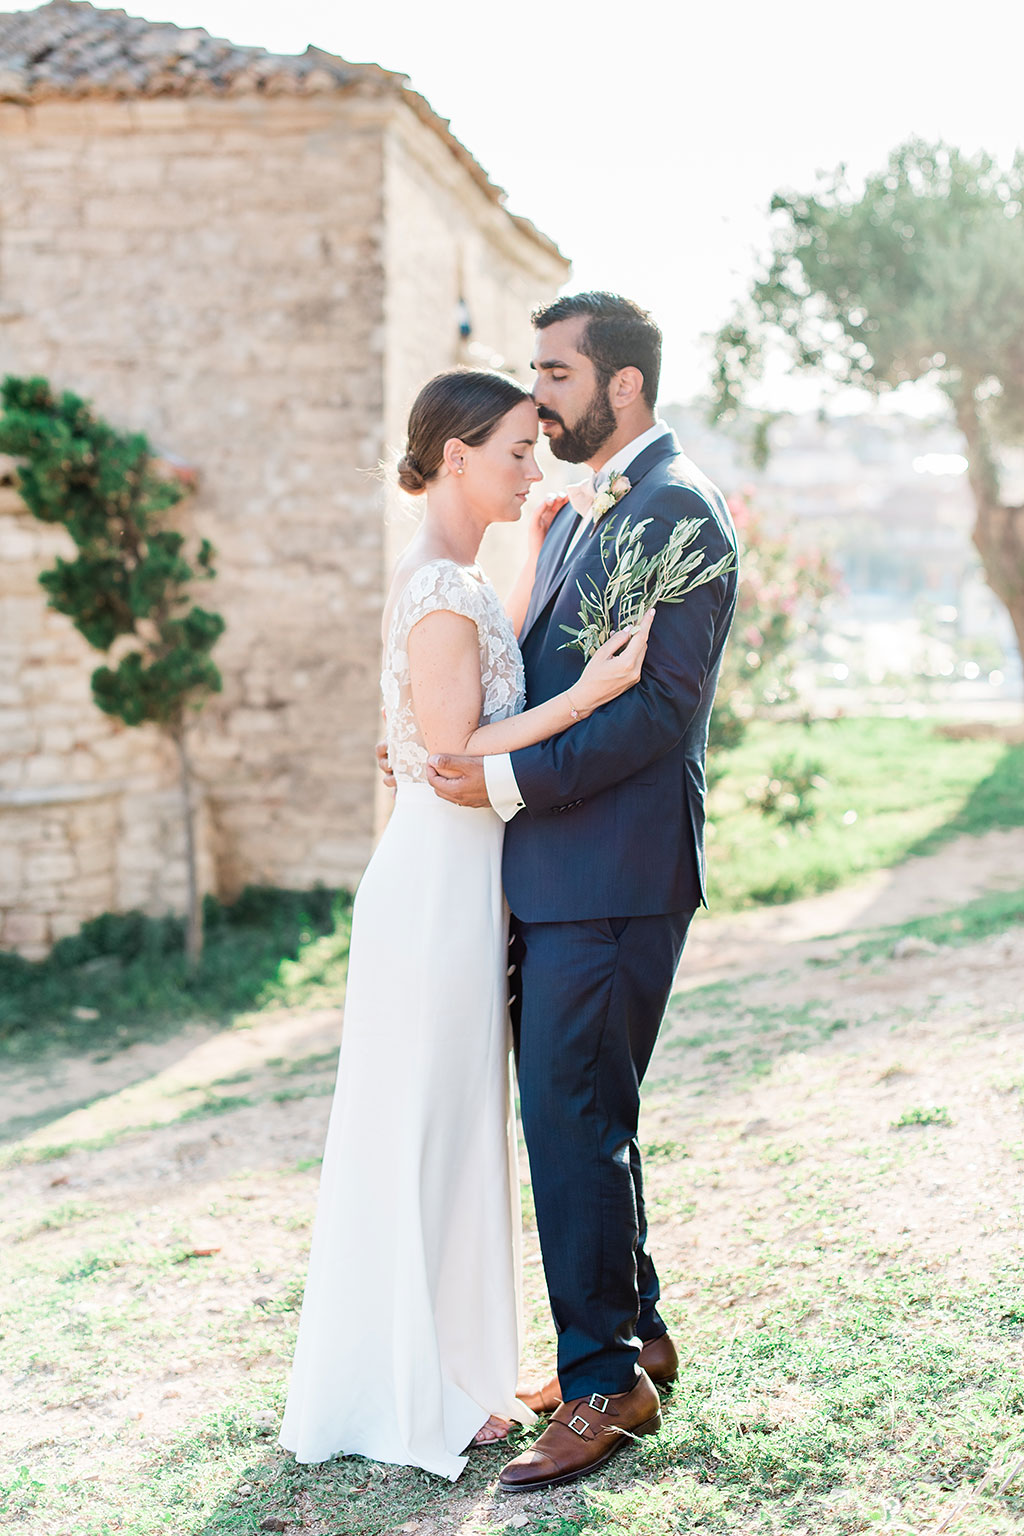 Φωτογράφος γάμου Χαλκιδική, George Kostopoulos Fine Art Wedding Photography, Dim & Cat in an emotional moment during the next day photoshoot